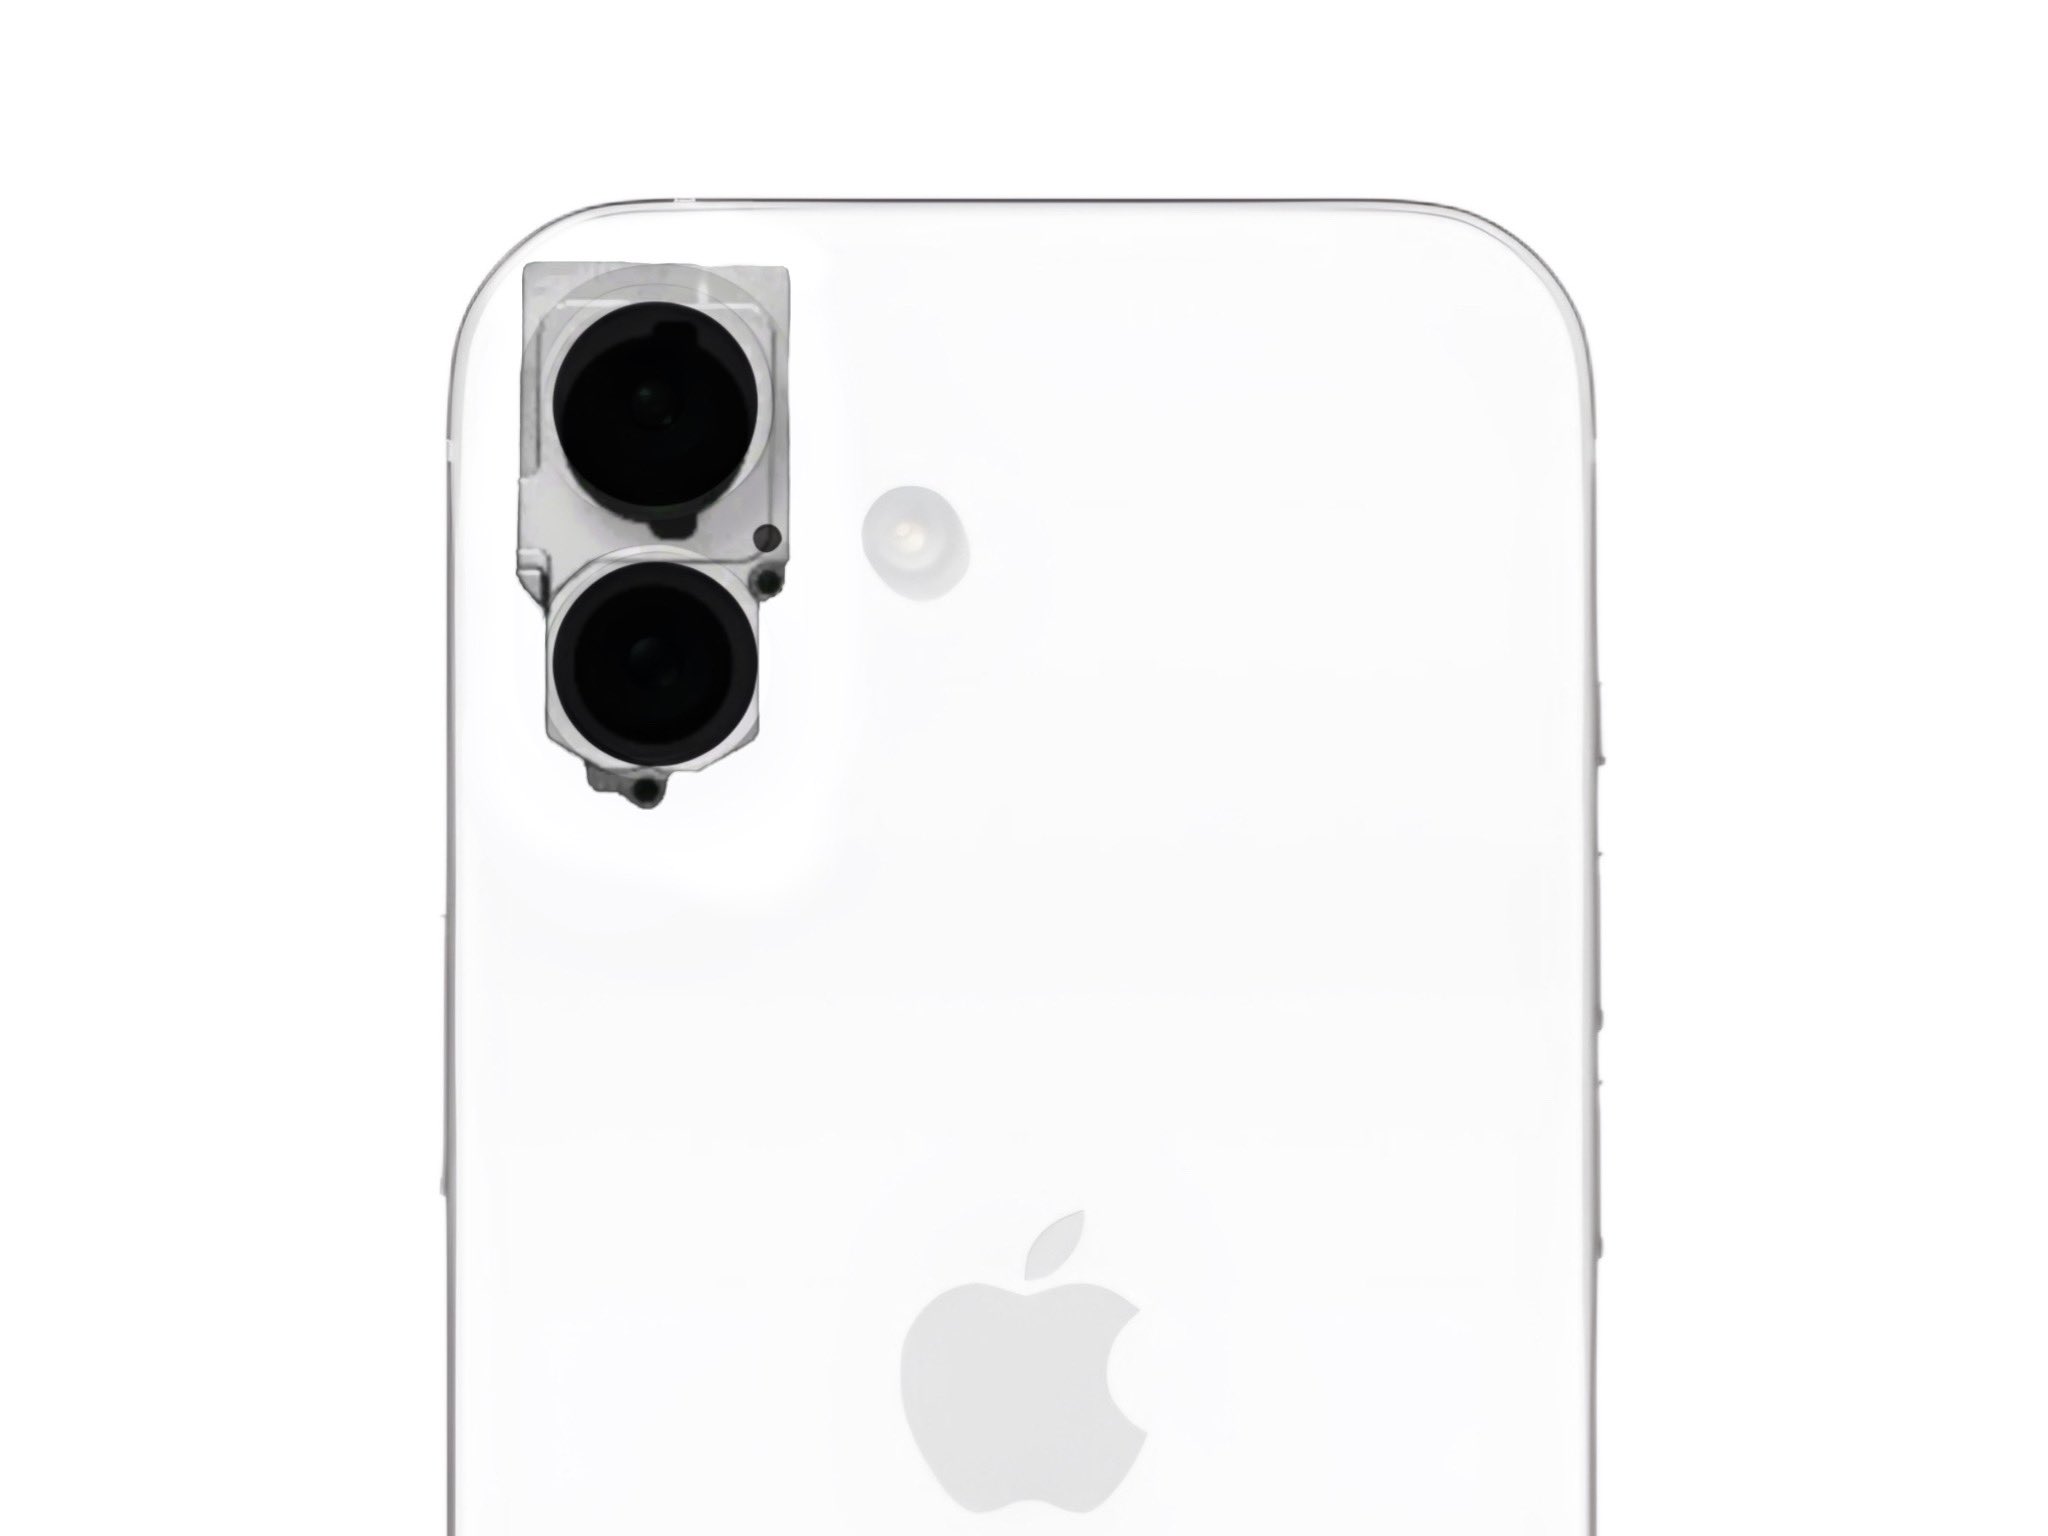 È emersa la prima foto dell'unità fotocamera dell'iPhone 16 con moduli posizionati verticalmente